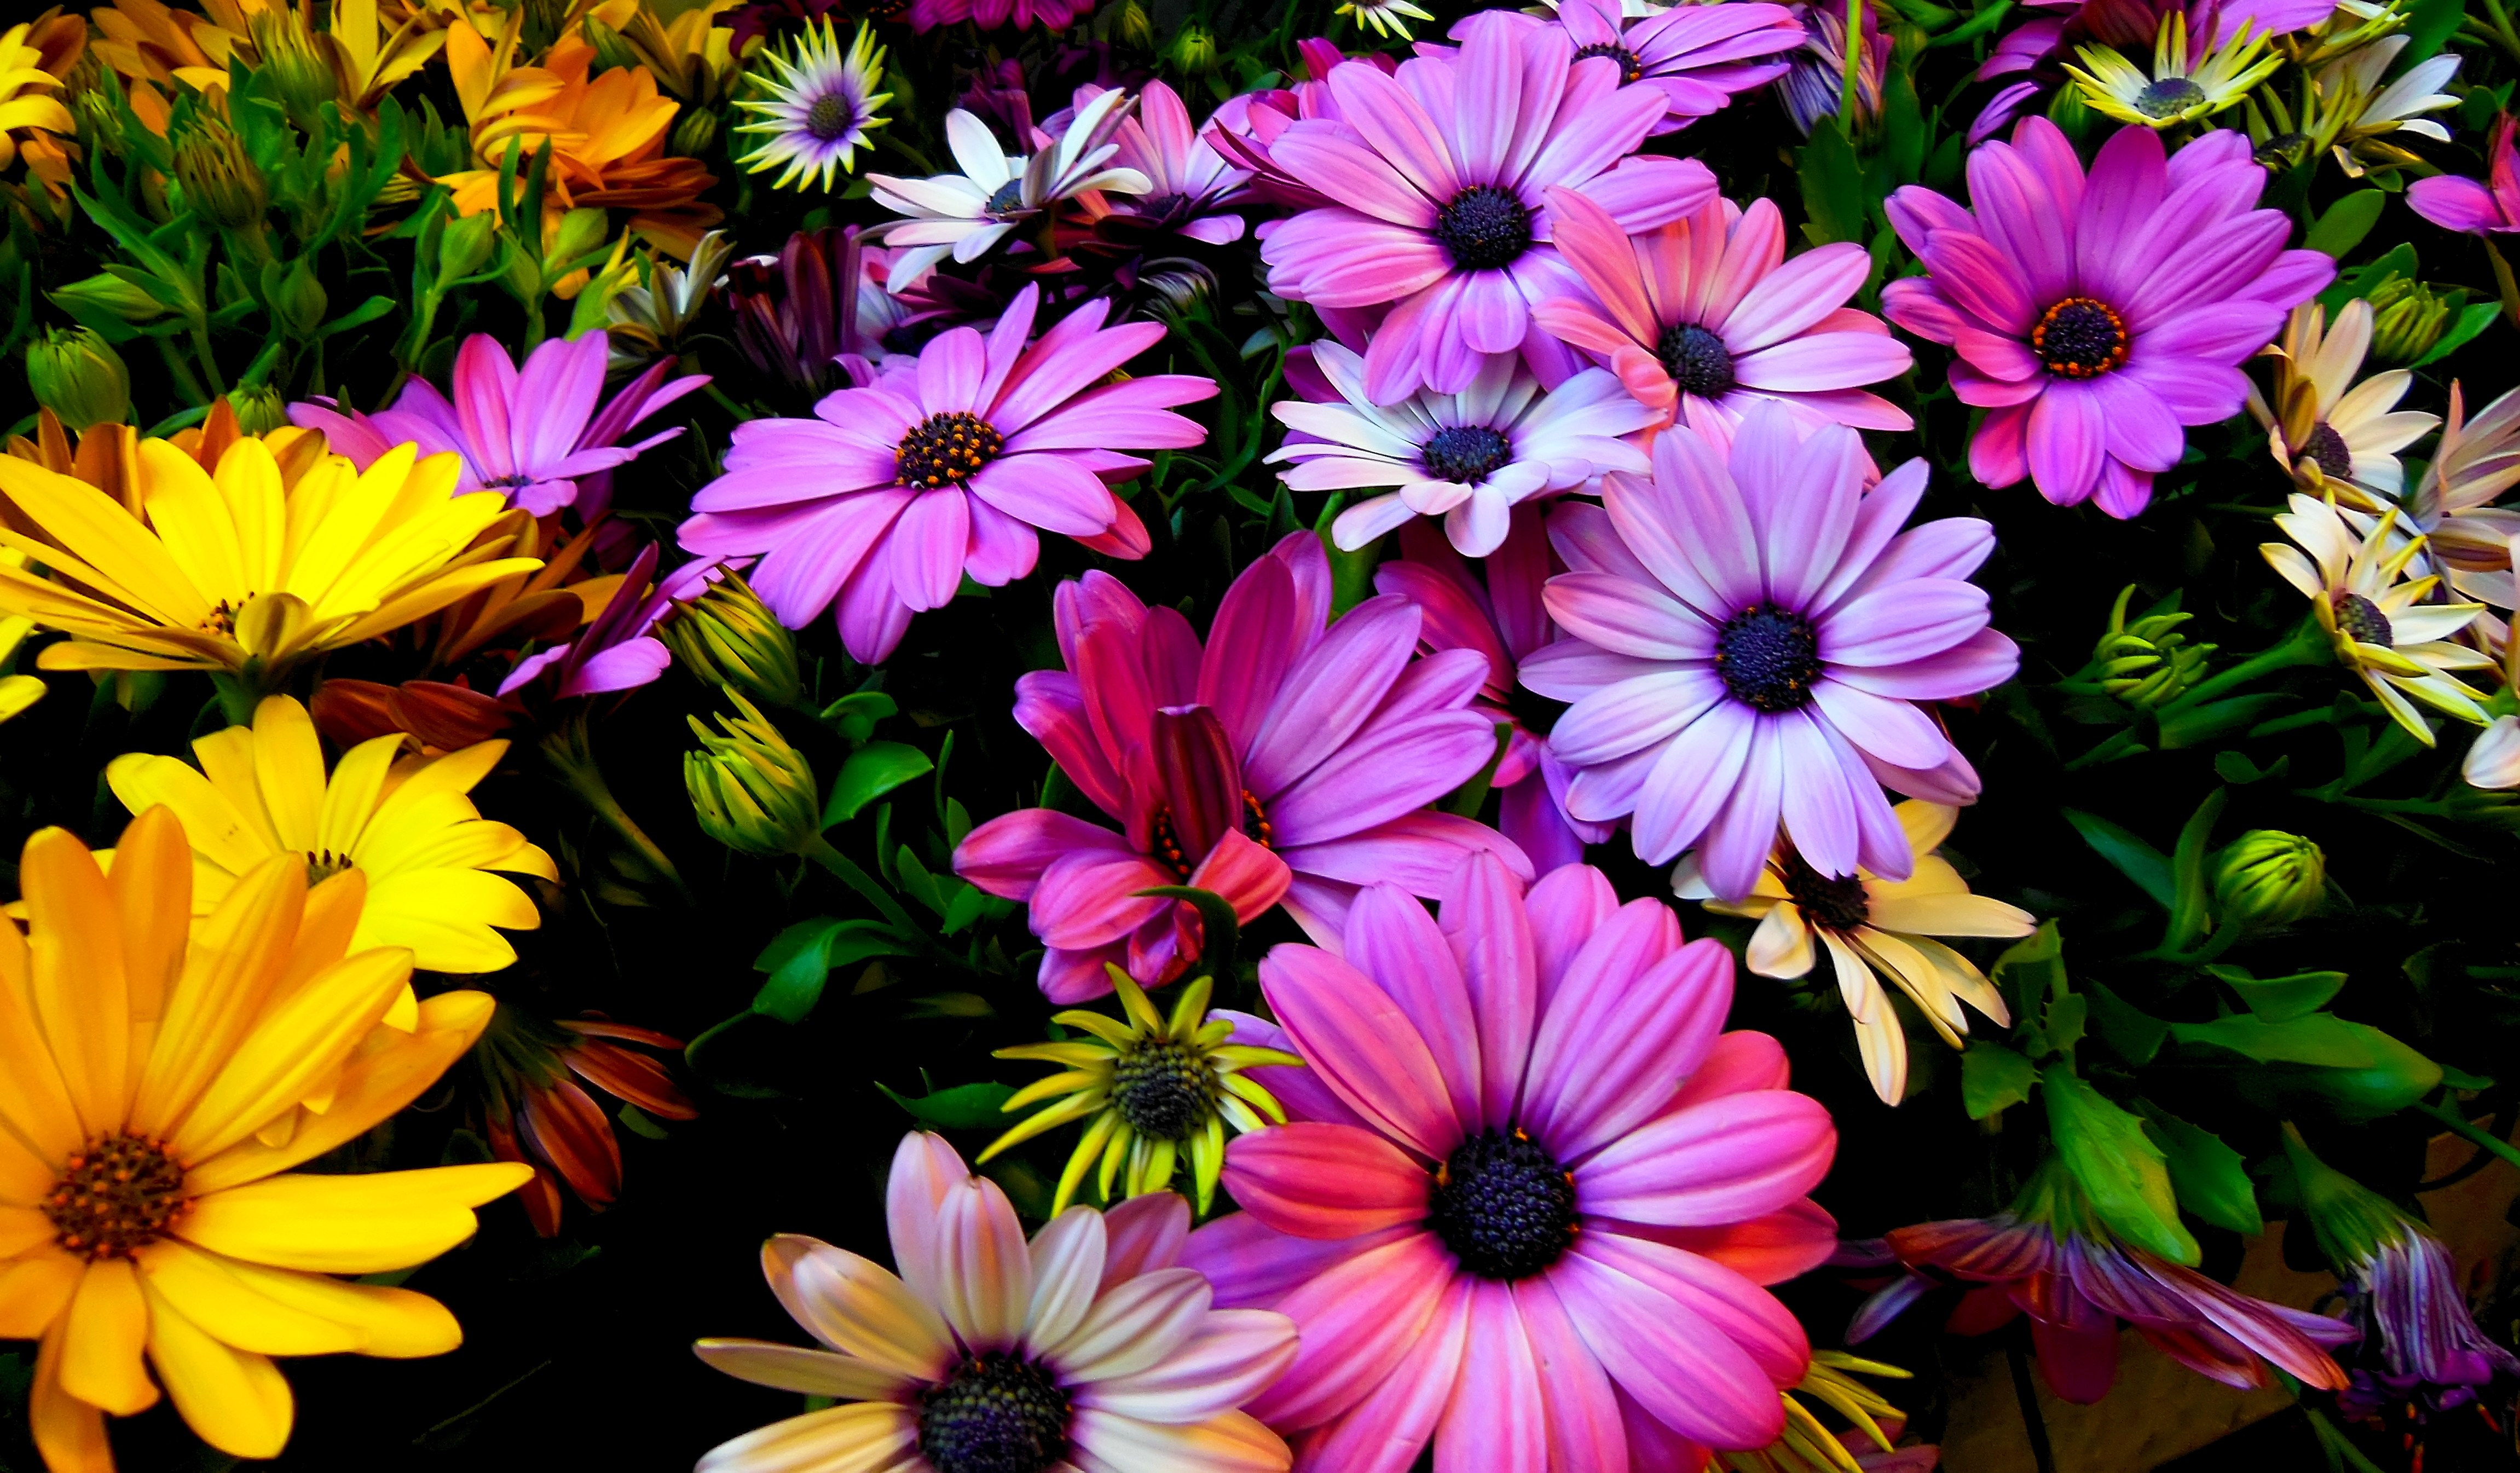 Spring flowers, Purple, Yellow, 4K, Daisy flowers Gallery HD Wallpaper